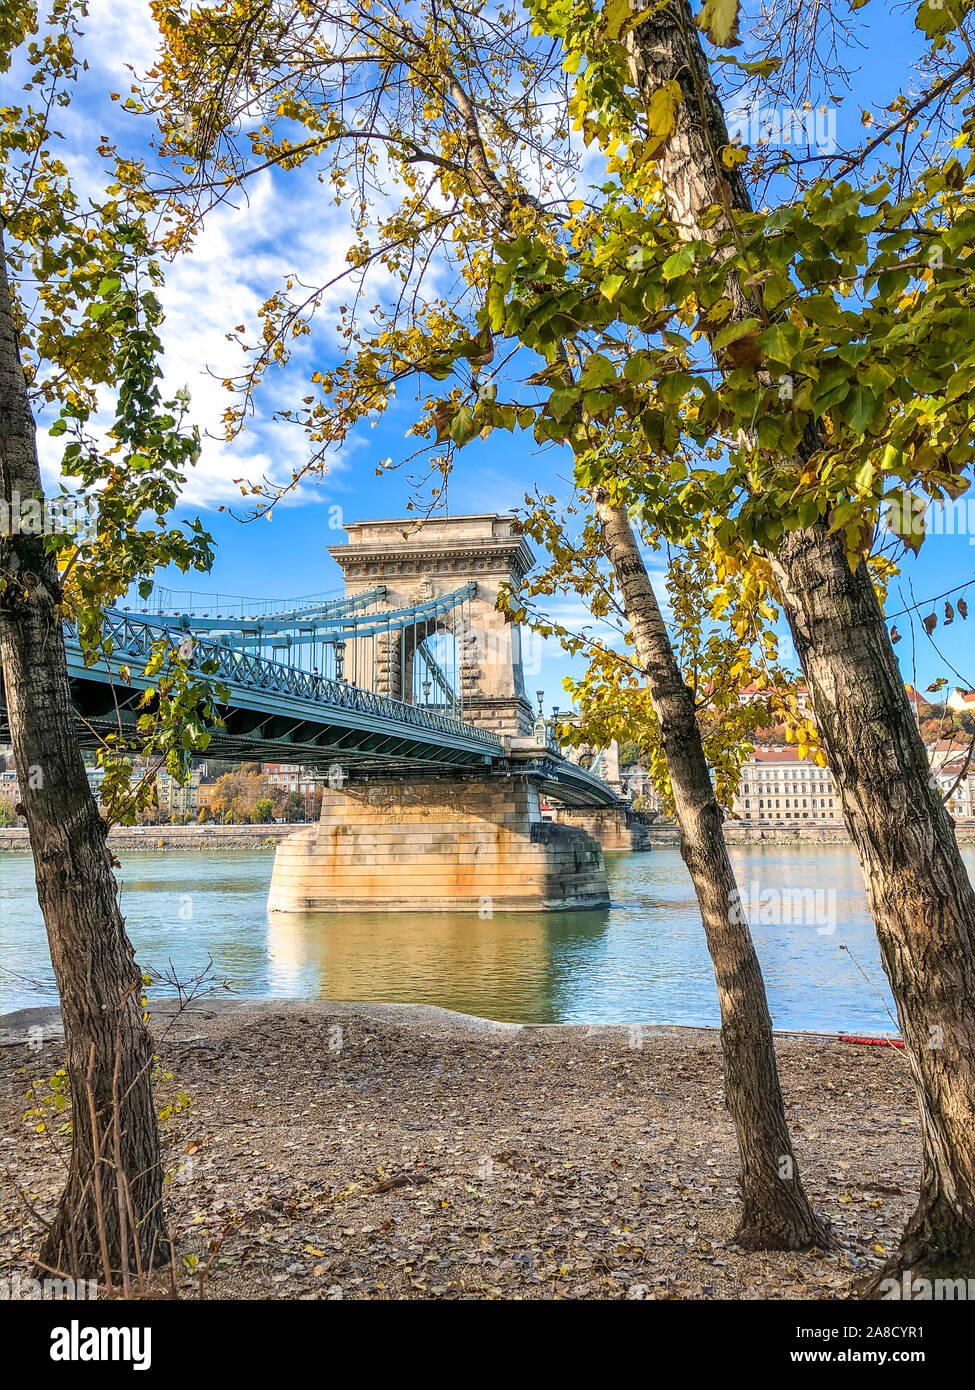 Photo verticale du célèbre Pont des chaînes Széchenyi à Budapest, Hongrie prises à l'automne les arbres dans les rives du Danube. Chaîne magnifique pont reliant Buda et Pest de la capitale hongroise. Banque D'Images